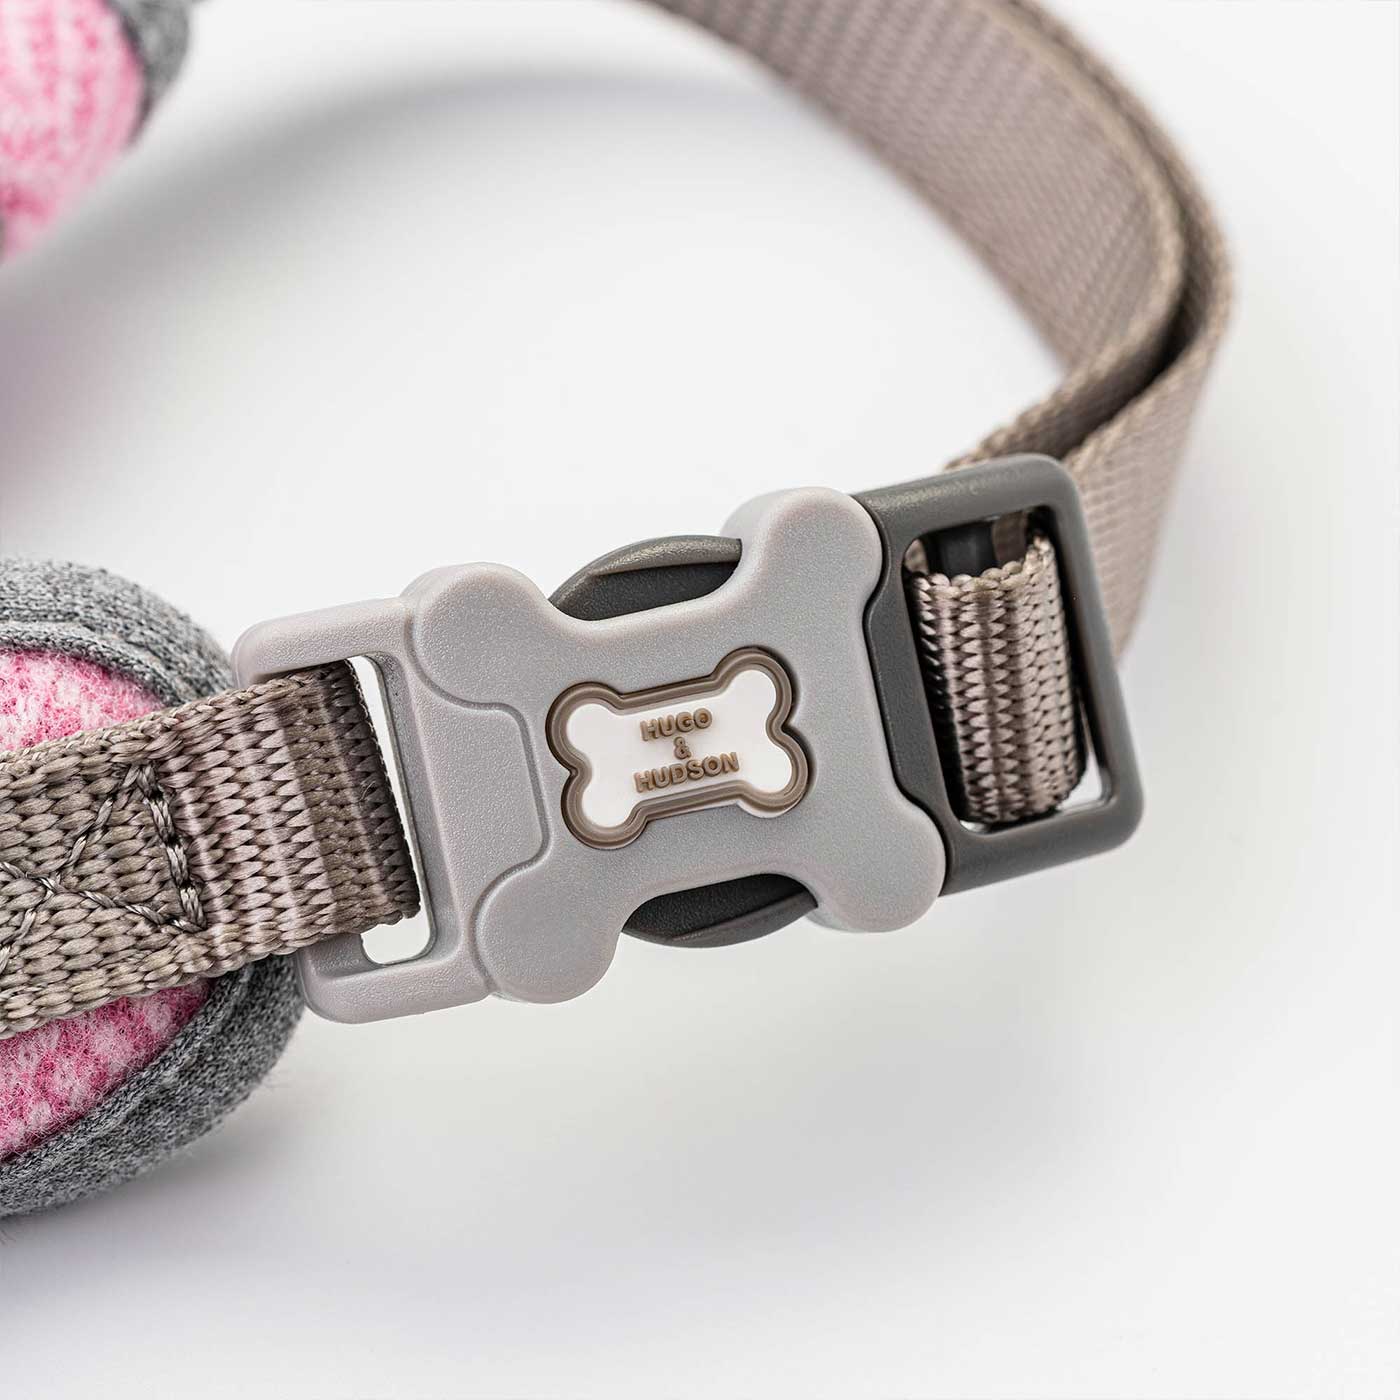 Hugo & Hudson Pink Herringbone Dog Harness